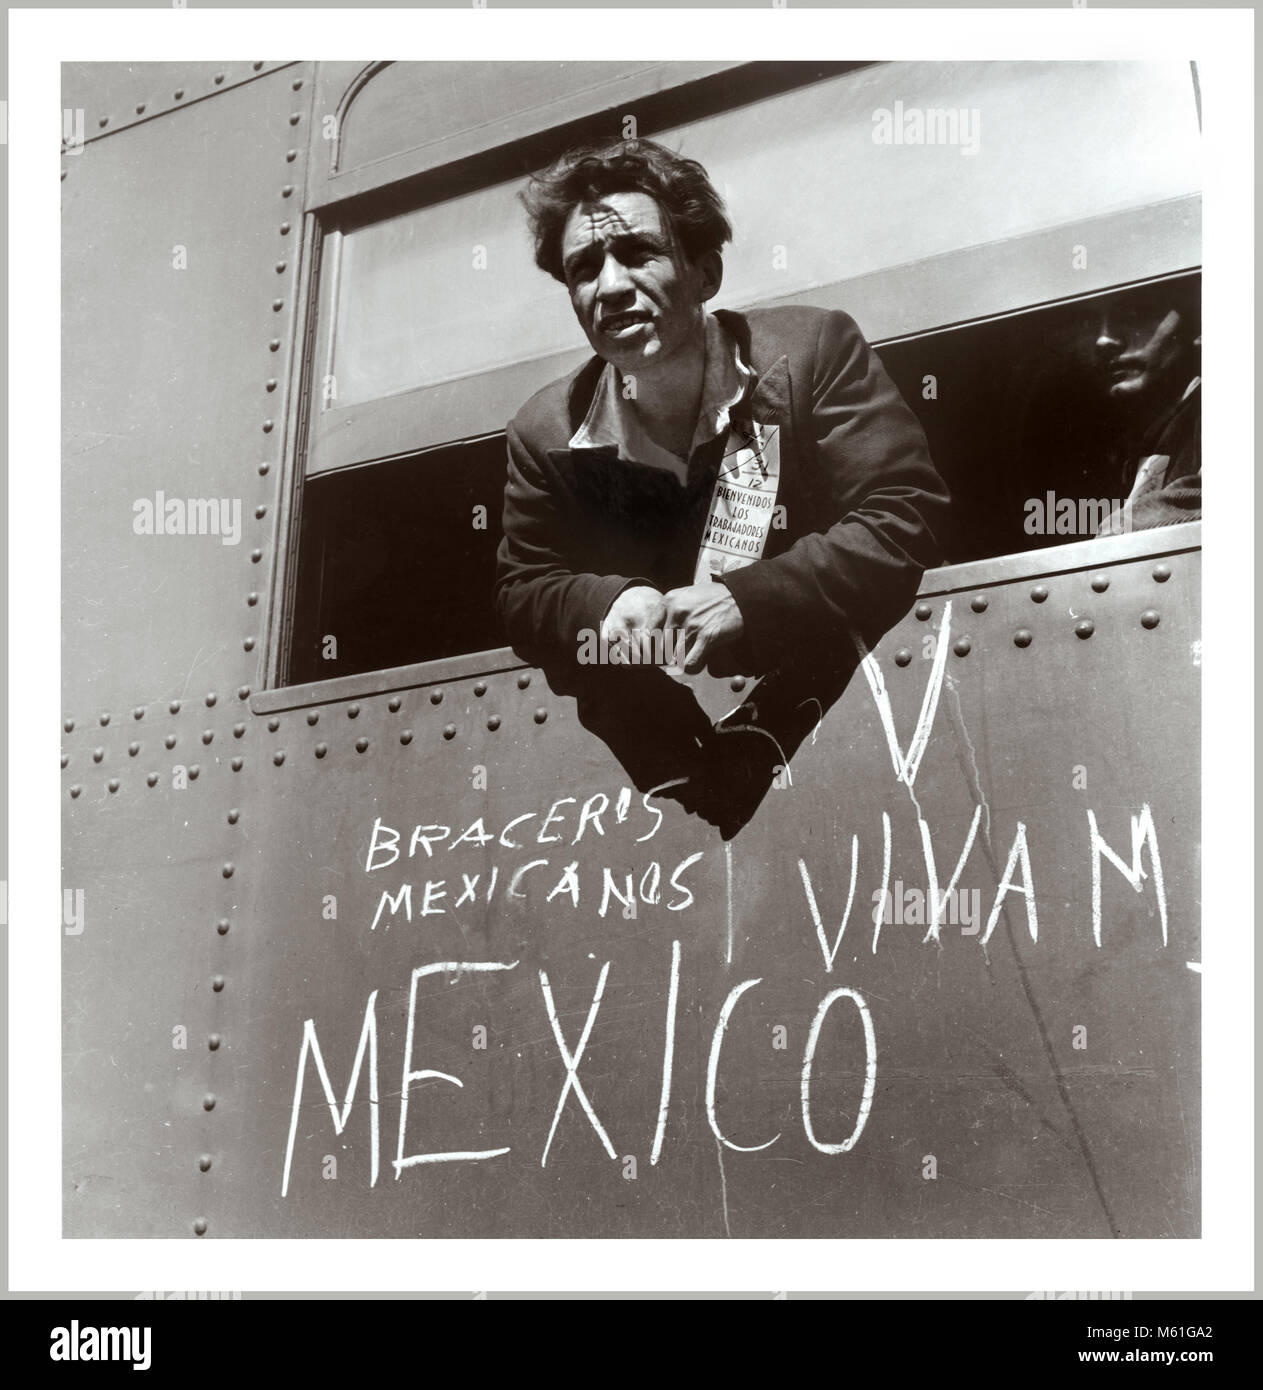 La II Guerra Mundial era para Homefront 1940 inmigrante mexicano entrar en los Estados Unidos. Un trabajador mexicano llega a EE.UU. durante los primeros días del programa de inmigración de braceros en esta imagen de 1942 Foto de stock